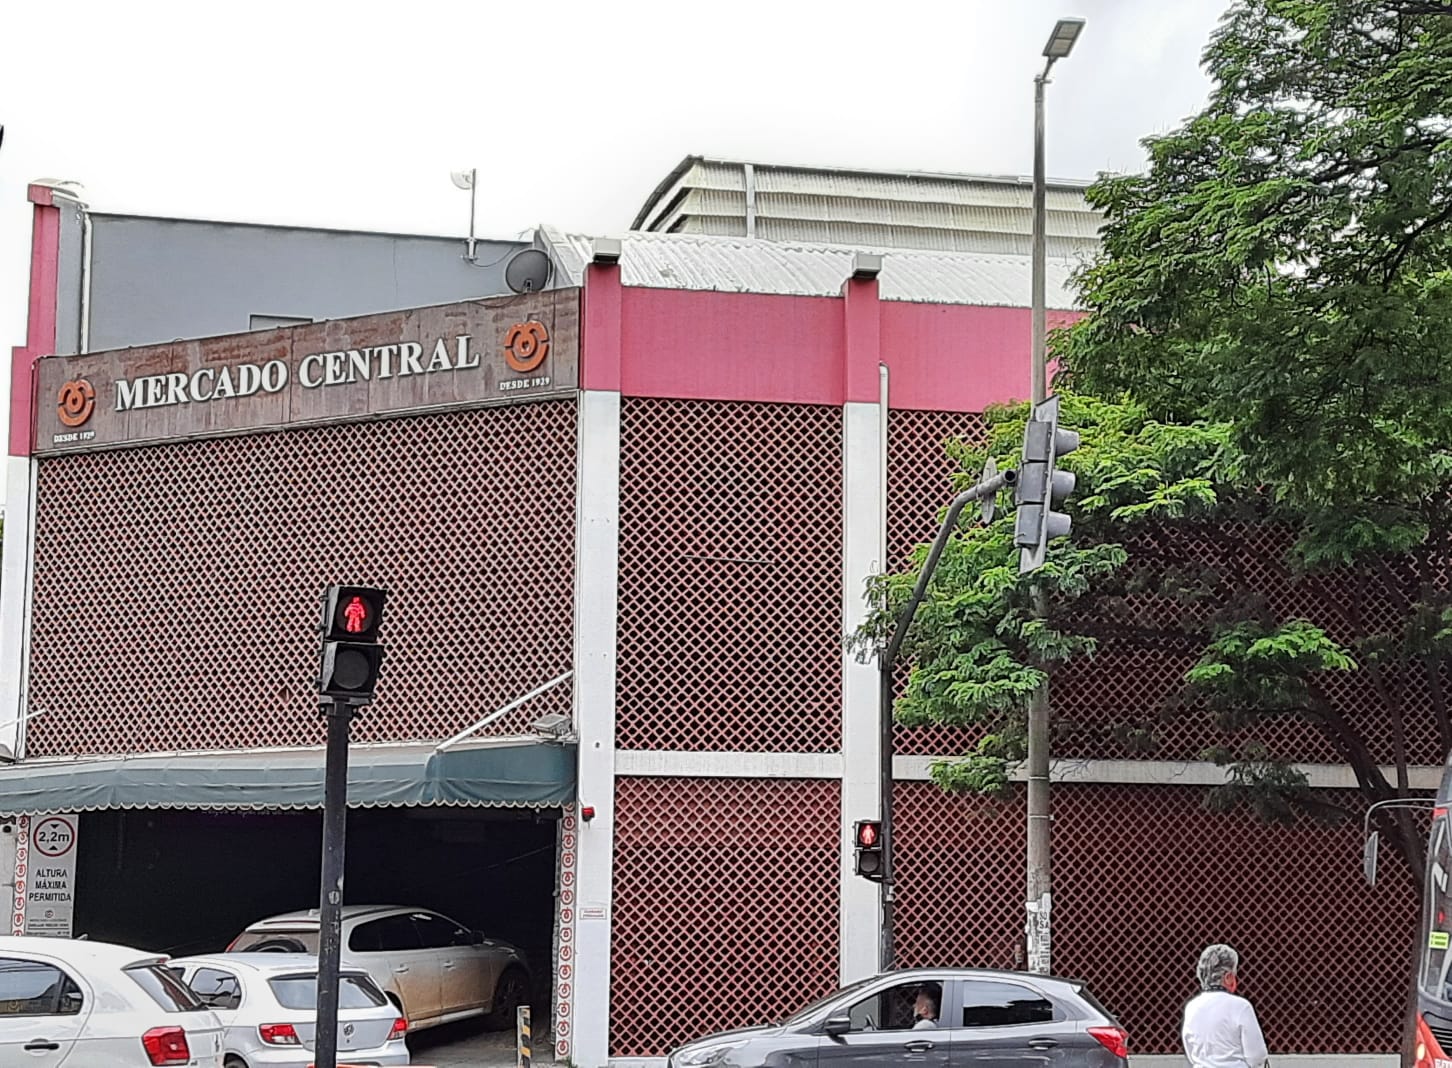 Mercado Central de Belo Horizonte - História e Tradição Mineira